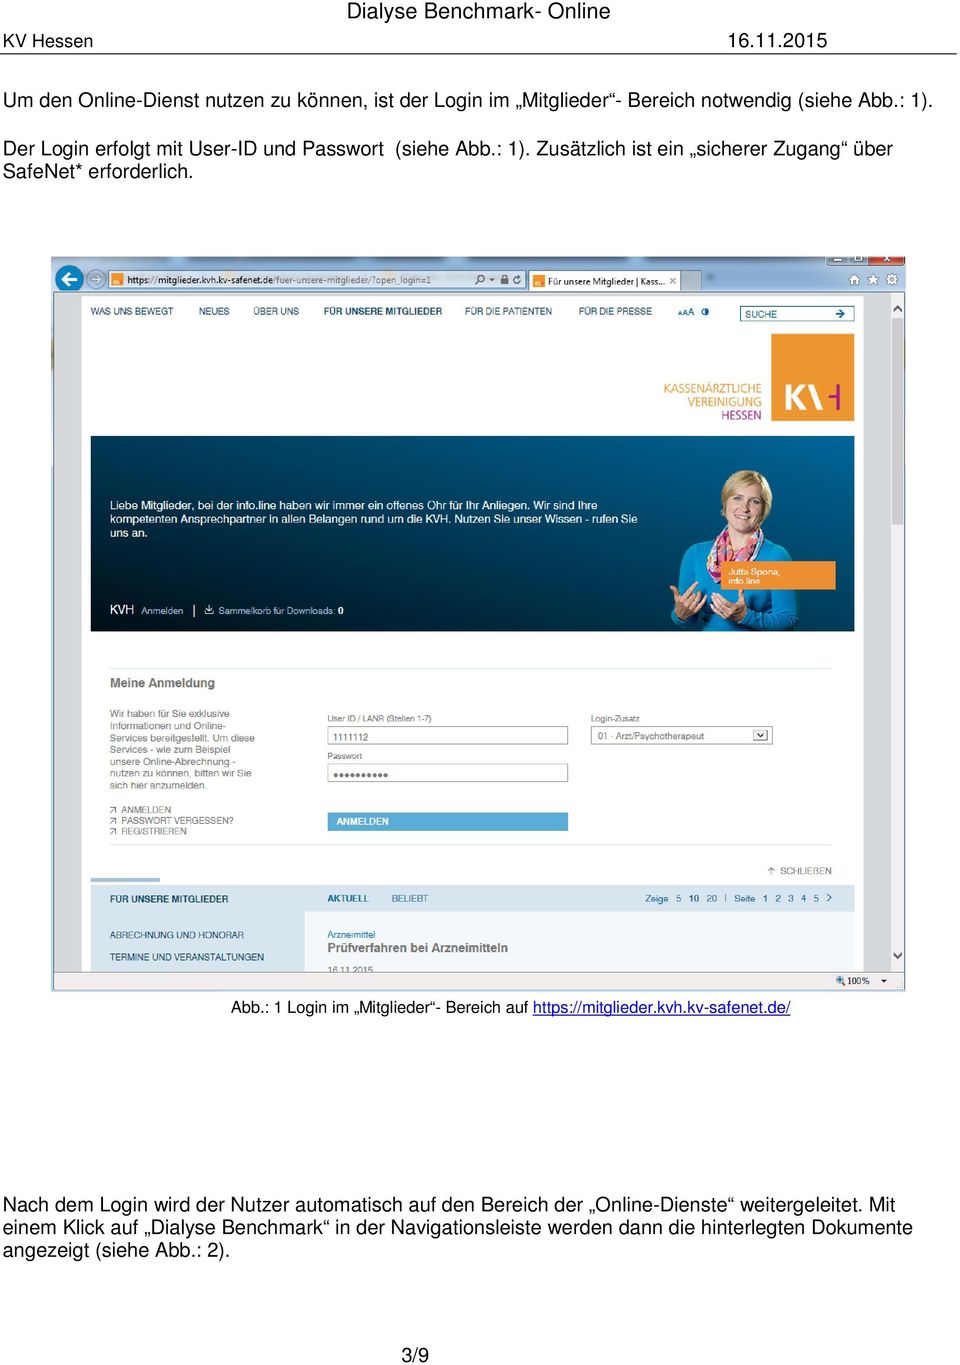 kvh.kv-safenet.de/ Nach dem Login wird der Nutzer automatisch auf den Bereich der Online-Dienste weitergeleitet.